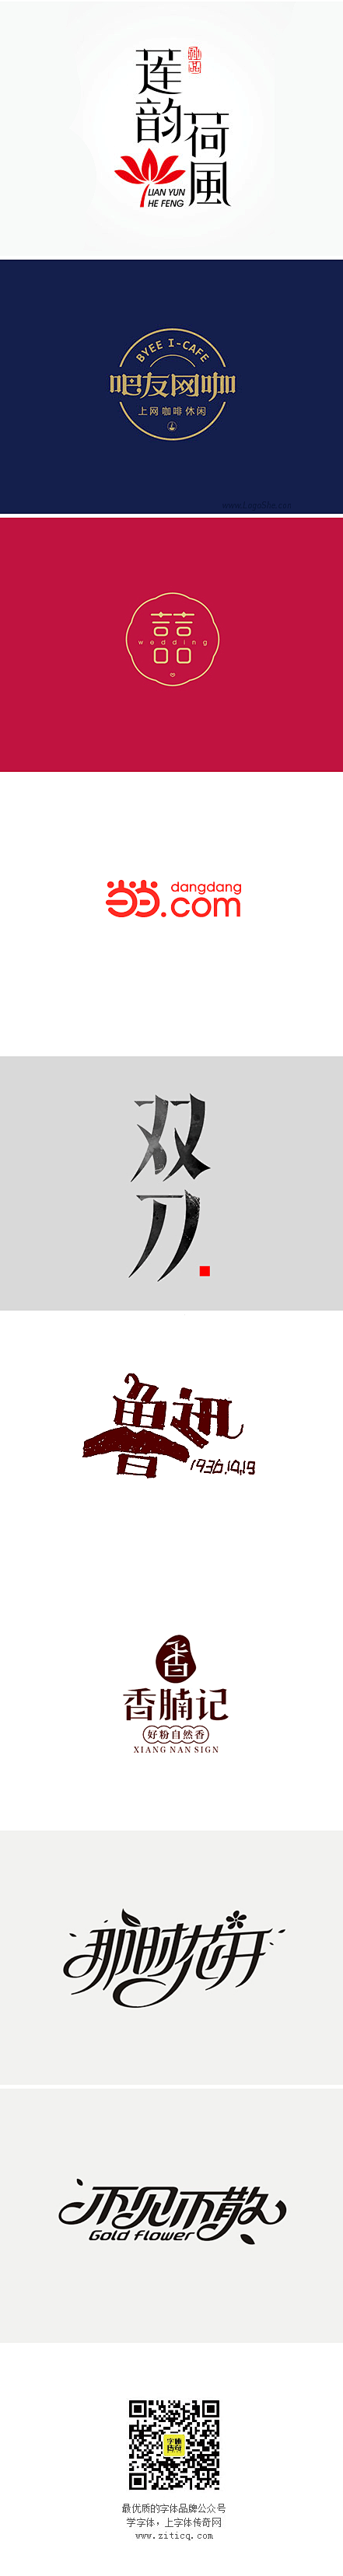 09期-商业中文字体设计推荐_字体传奇网...